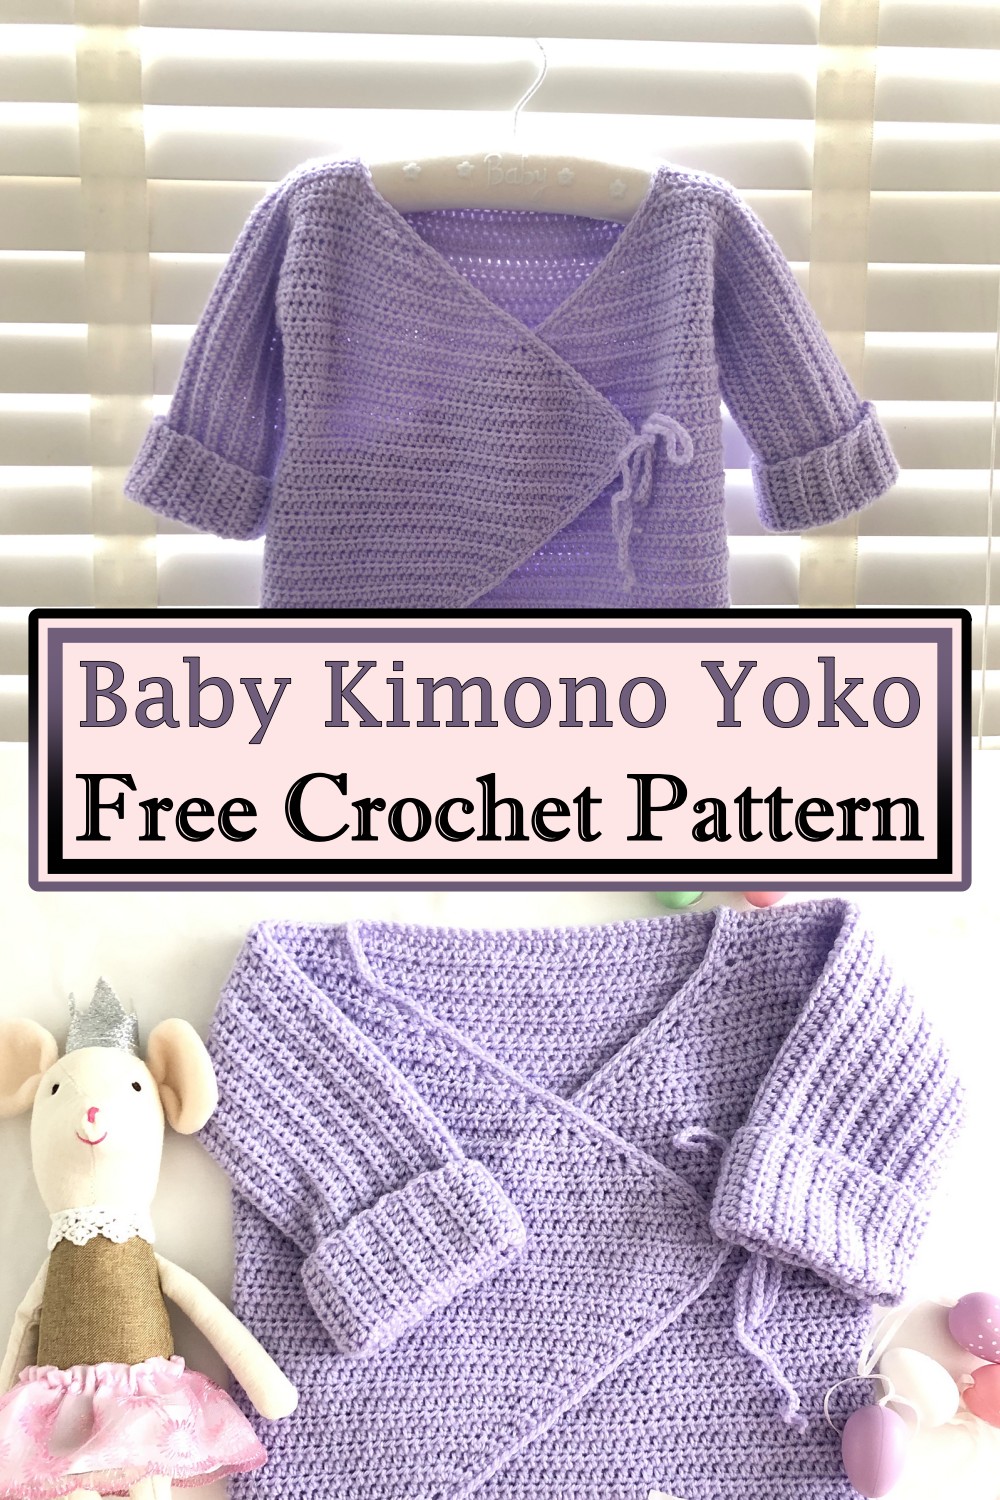 Baby Kimono Yoko